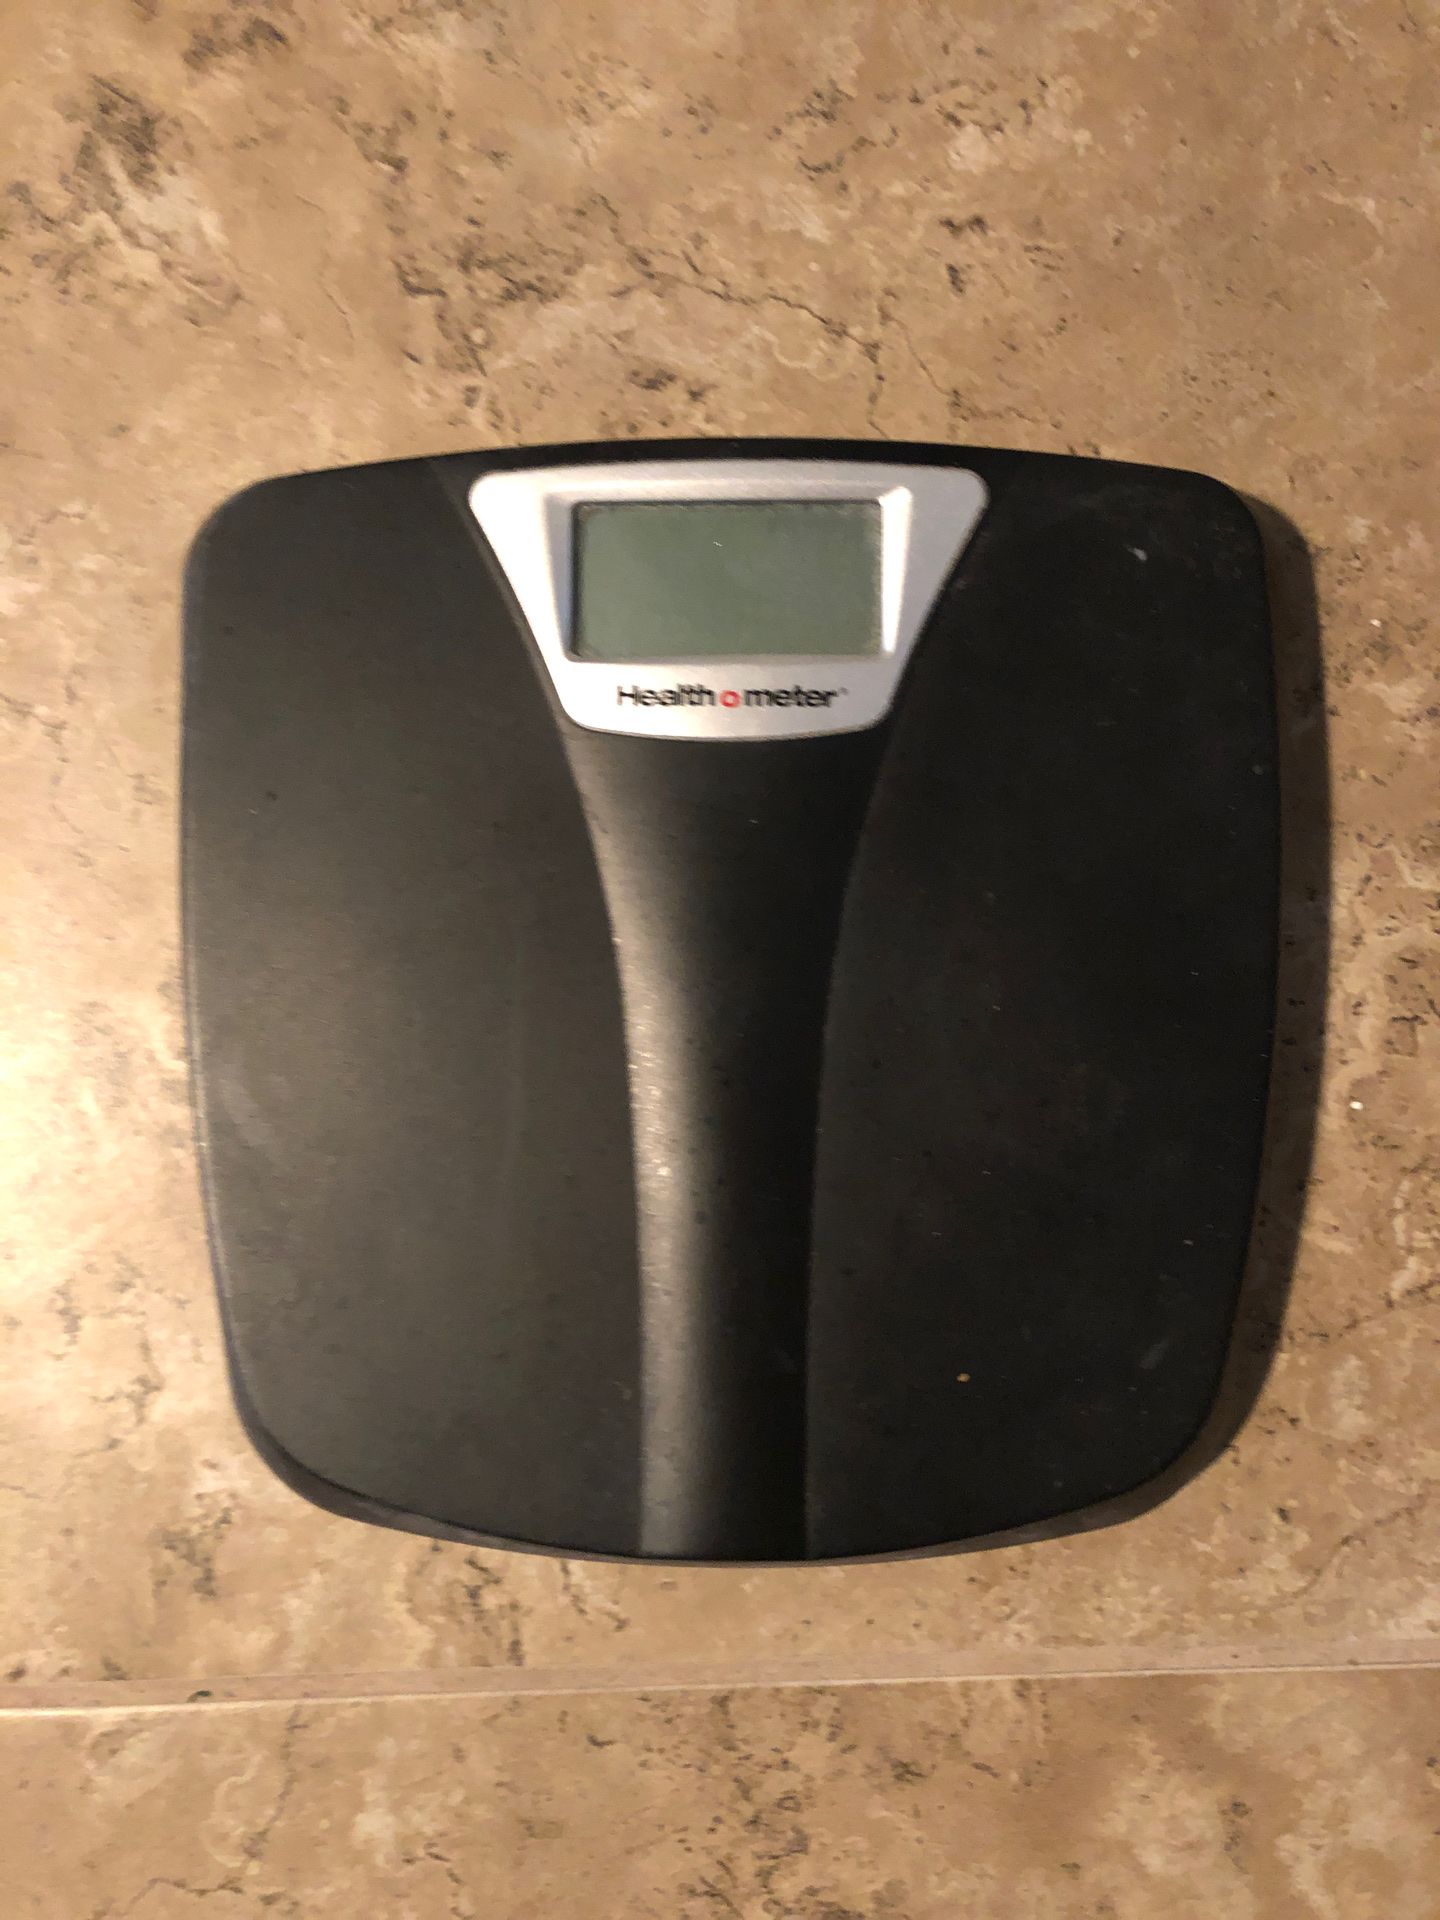 Healthometer digital bathroom scale